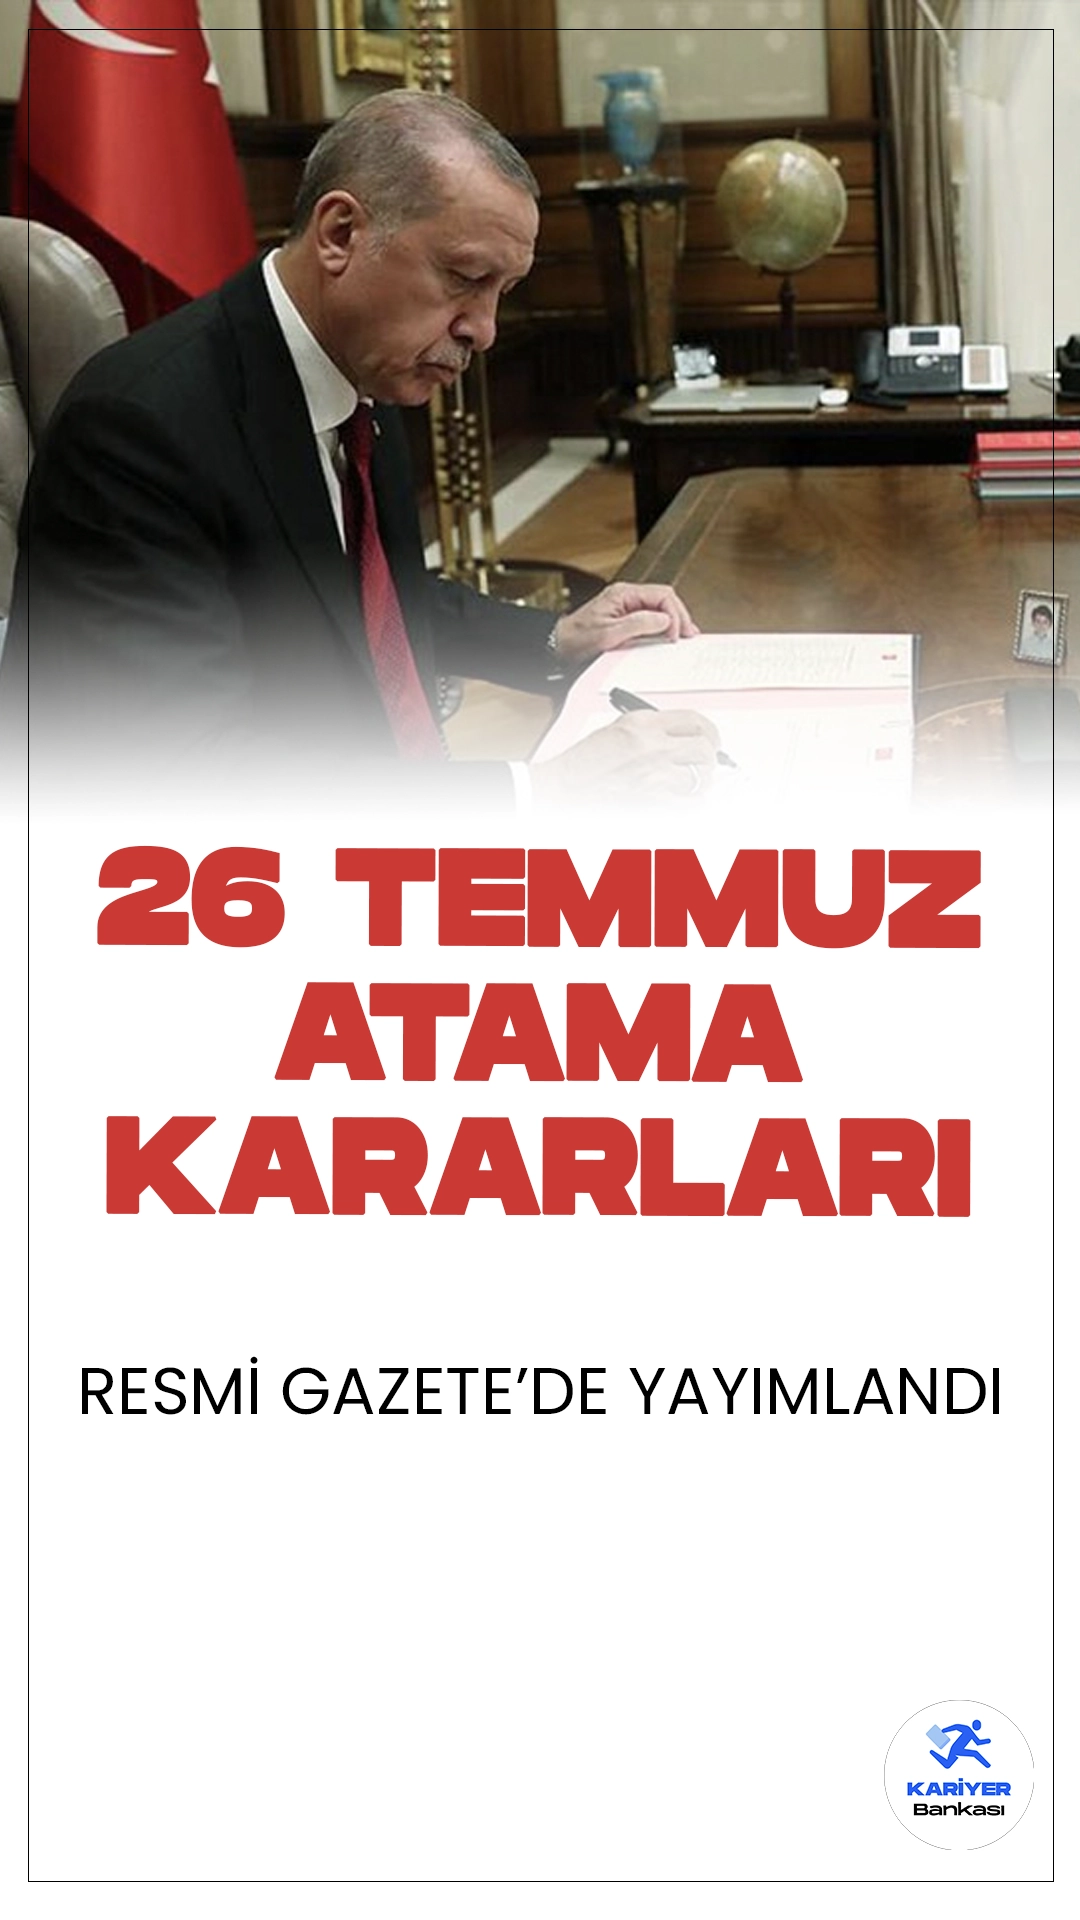 26 Temmuz Atama Kararları Resmi Gazete'de Yayımlandı.Cumhurbaşkanı Recep Tayyip Erdoğan imzasıyla bazı bakanlık ve kamu kurumlarına yapılan atama ve görevden alma kararları Resmi Gazete'de yayımlandı.